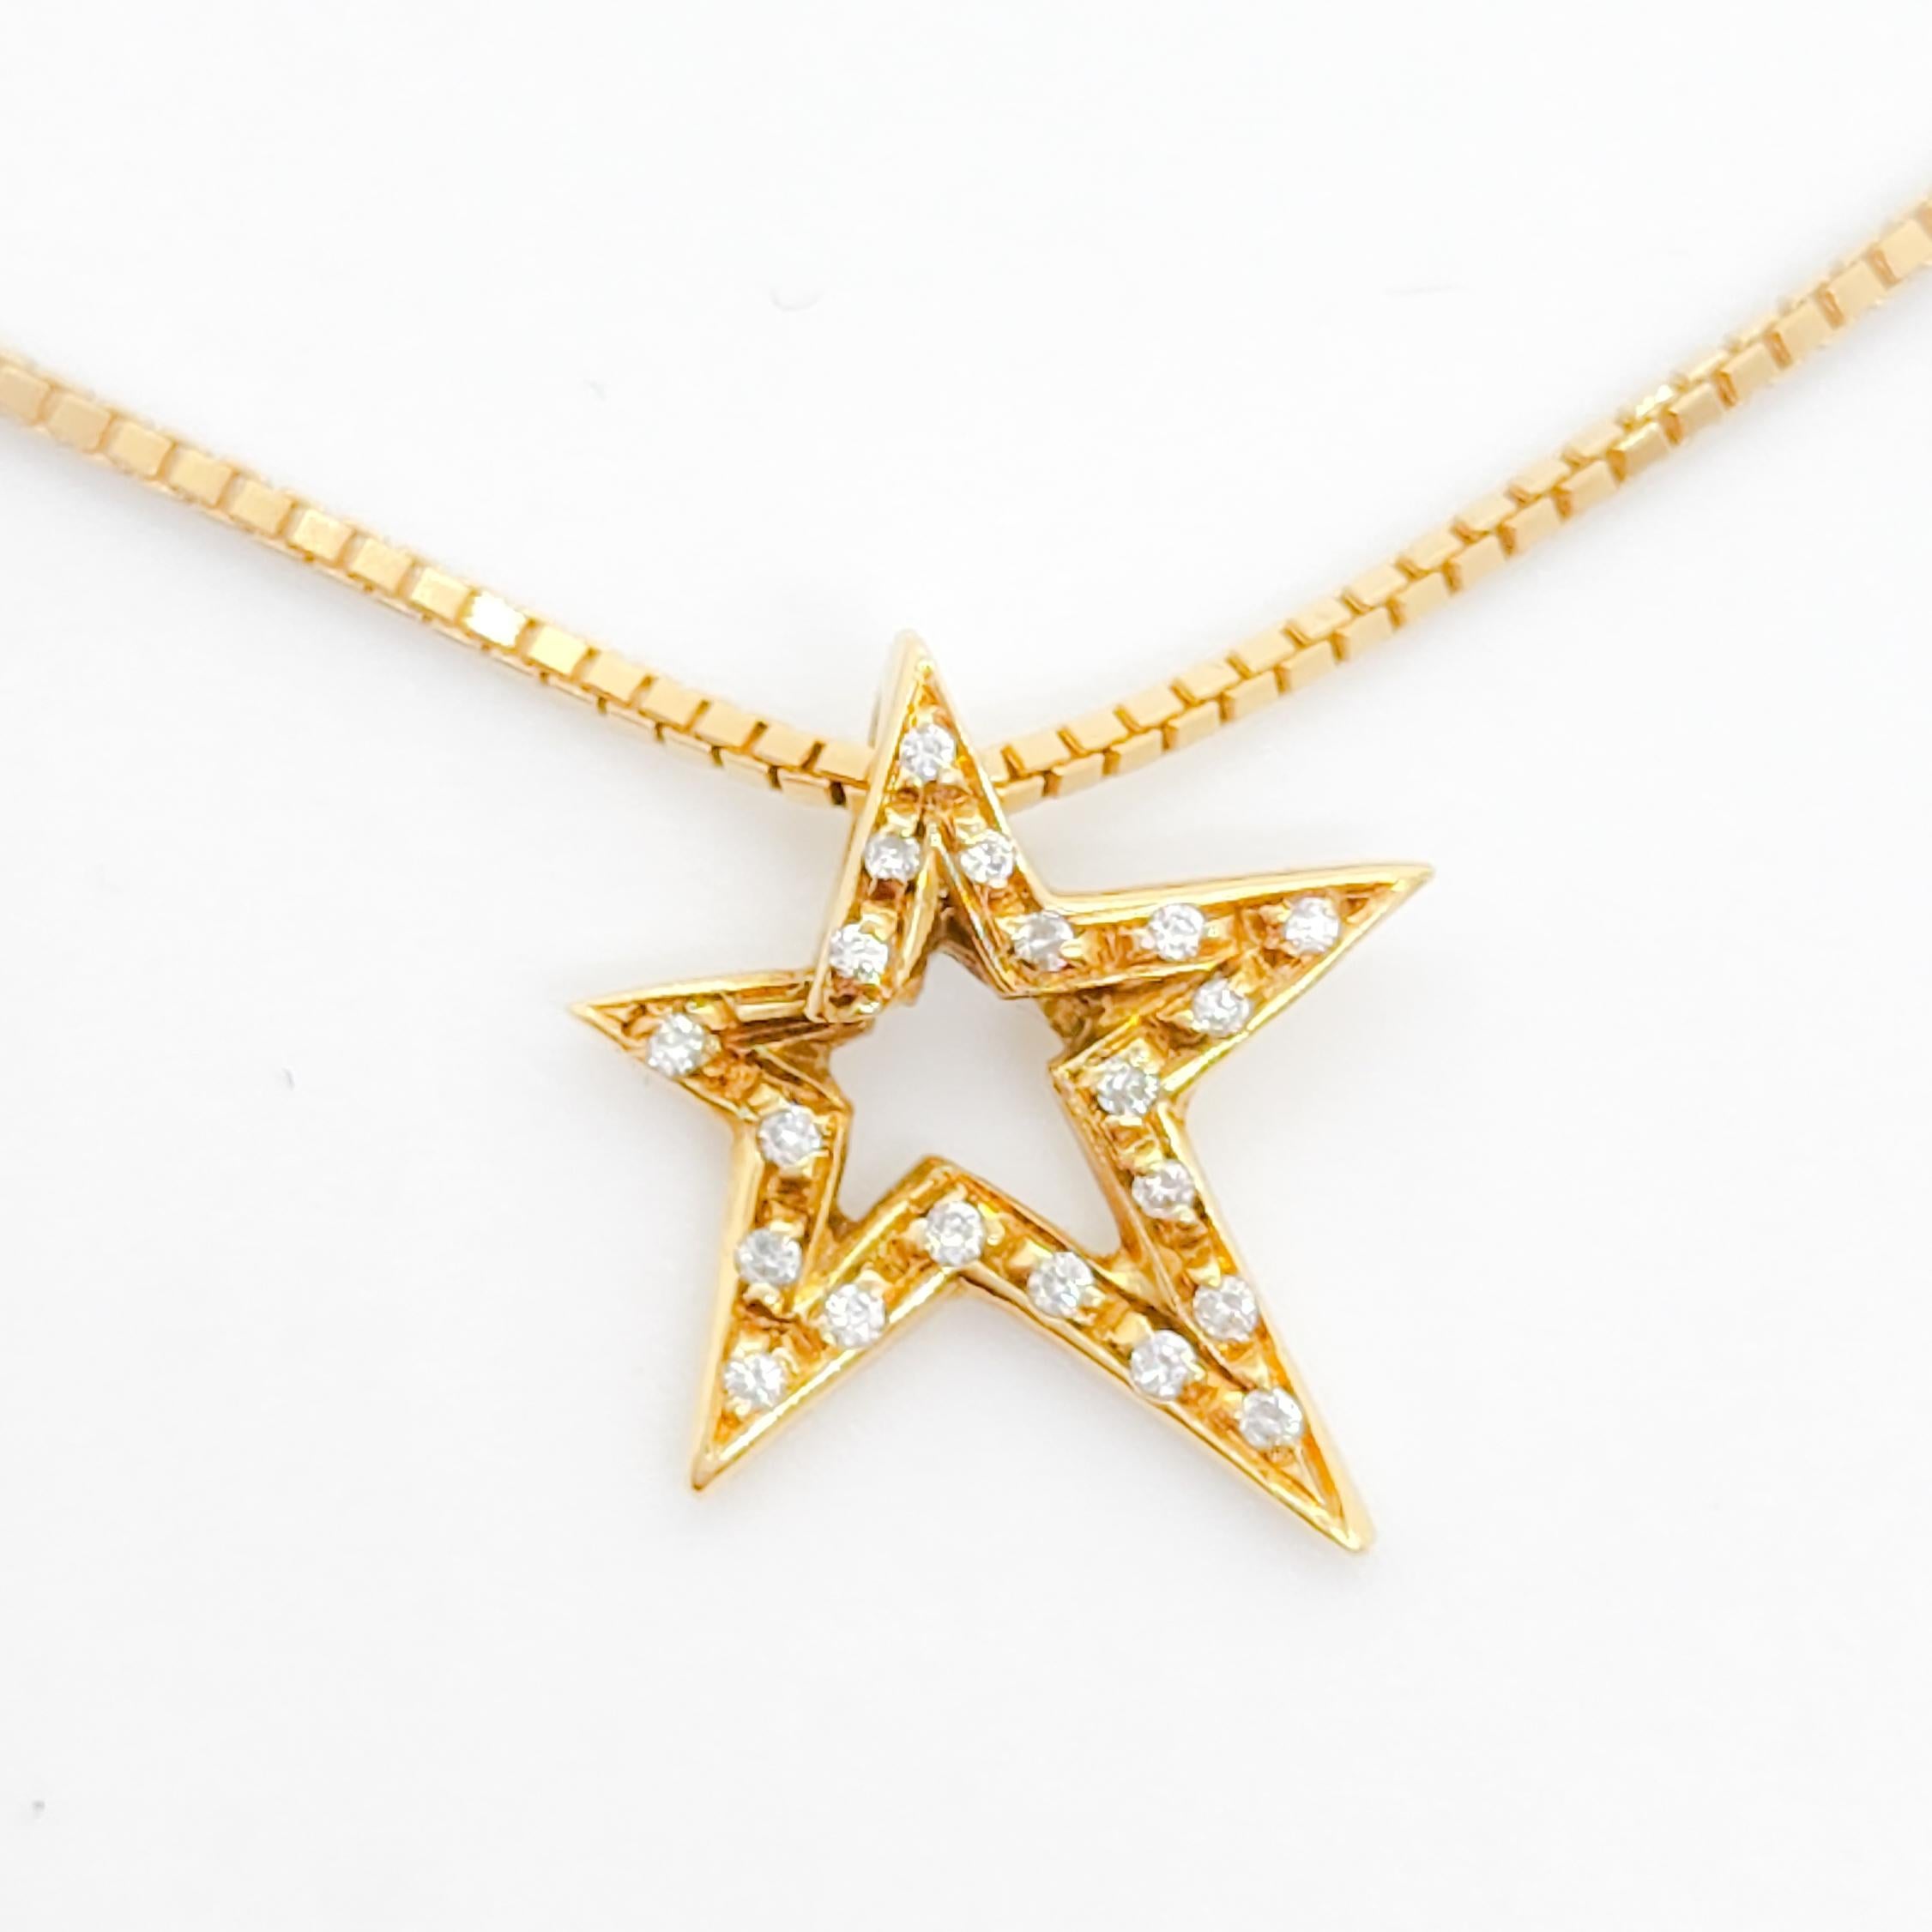 Magnifique bracelet de cheville H. Stern avec un motif d'étoile creuse réalisé avec des diamants ronds blancs de bonne qualité.  La longueur est de 9,5